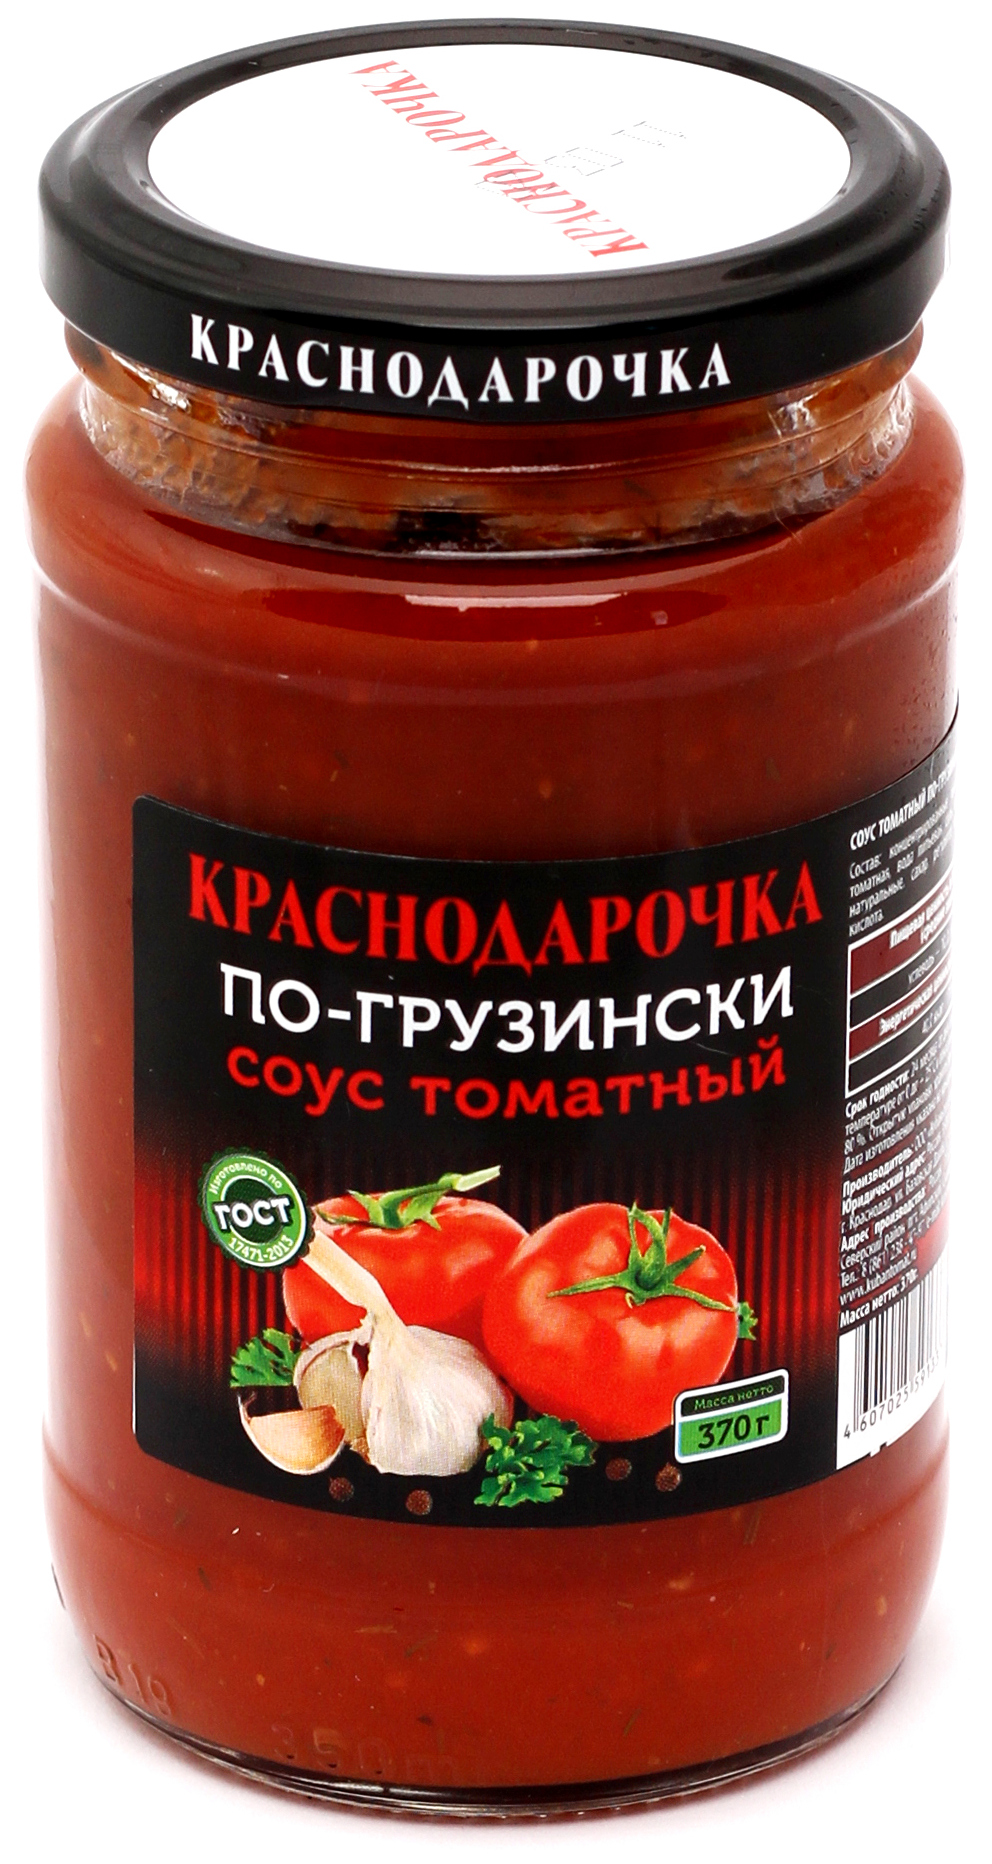 Соус томатный по-грузински "Краснодарочка" ГОСТ. Стеклобанка 370 г Евро